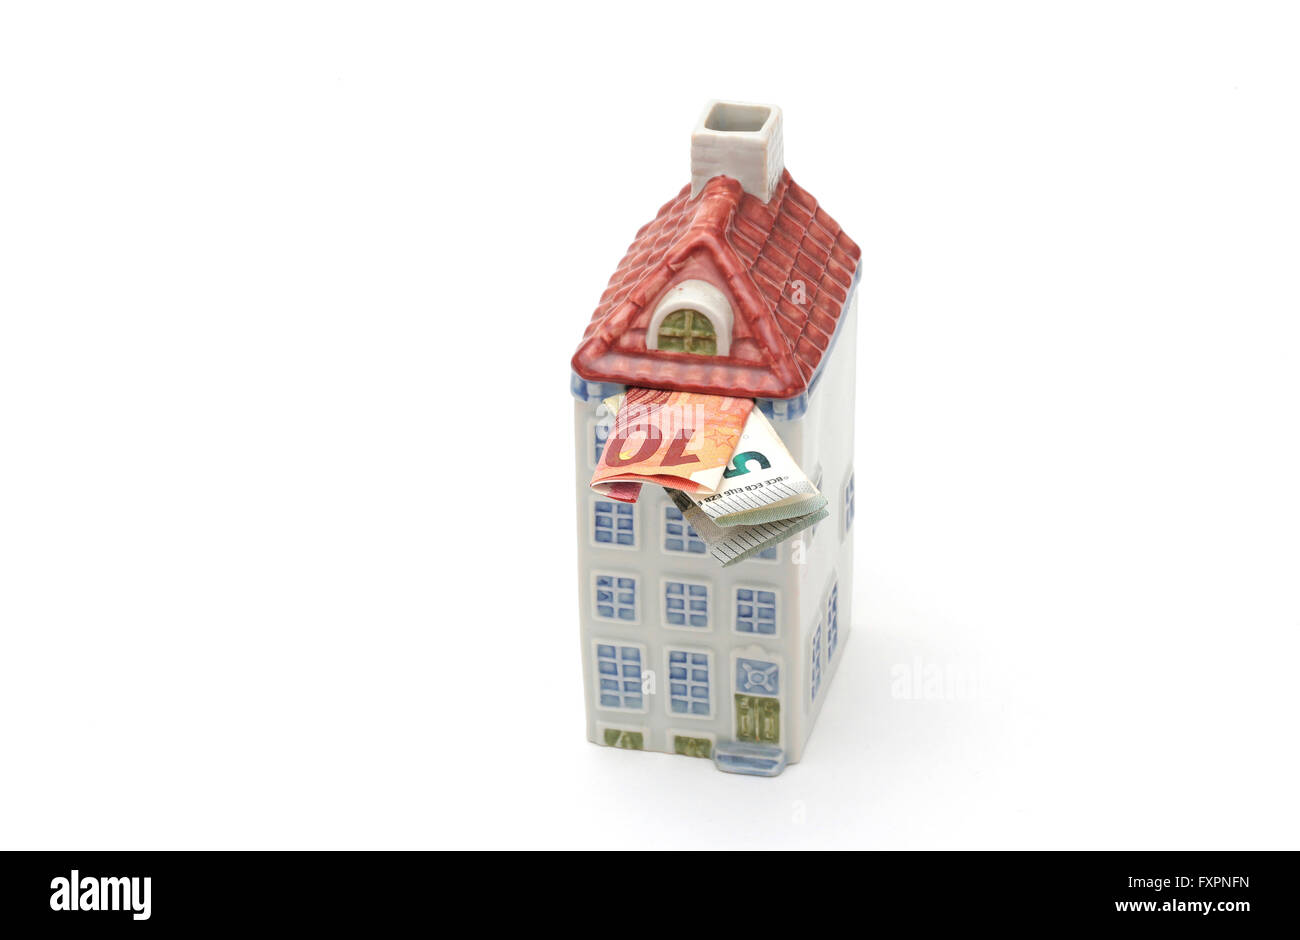 Eine Spardose in Form eines Hauses mit Geld gefüllt Stockfotografie - Alamy